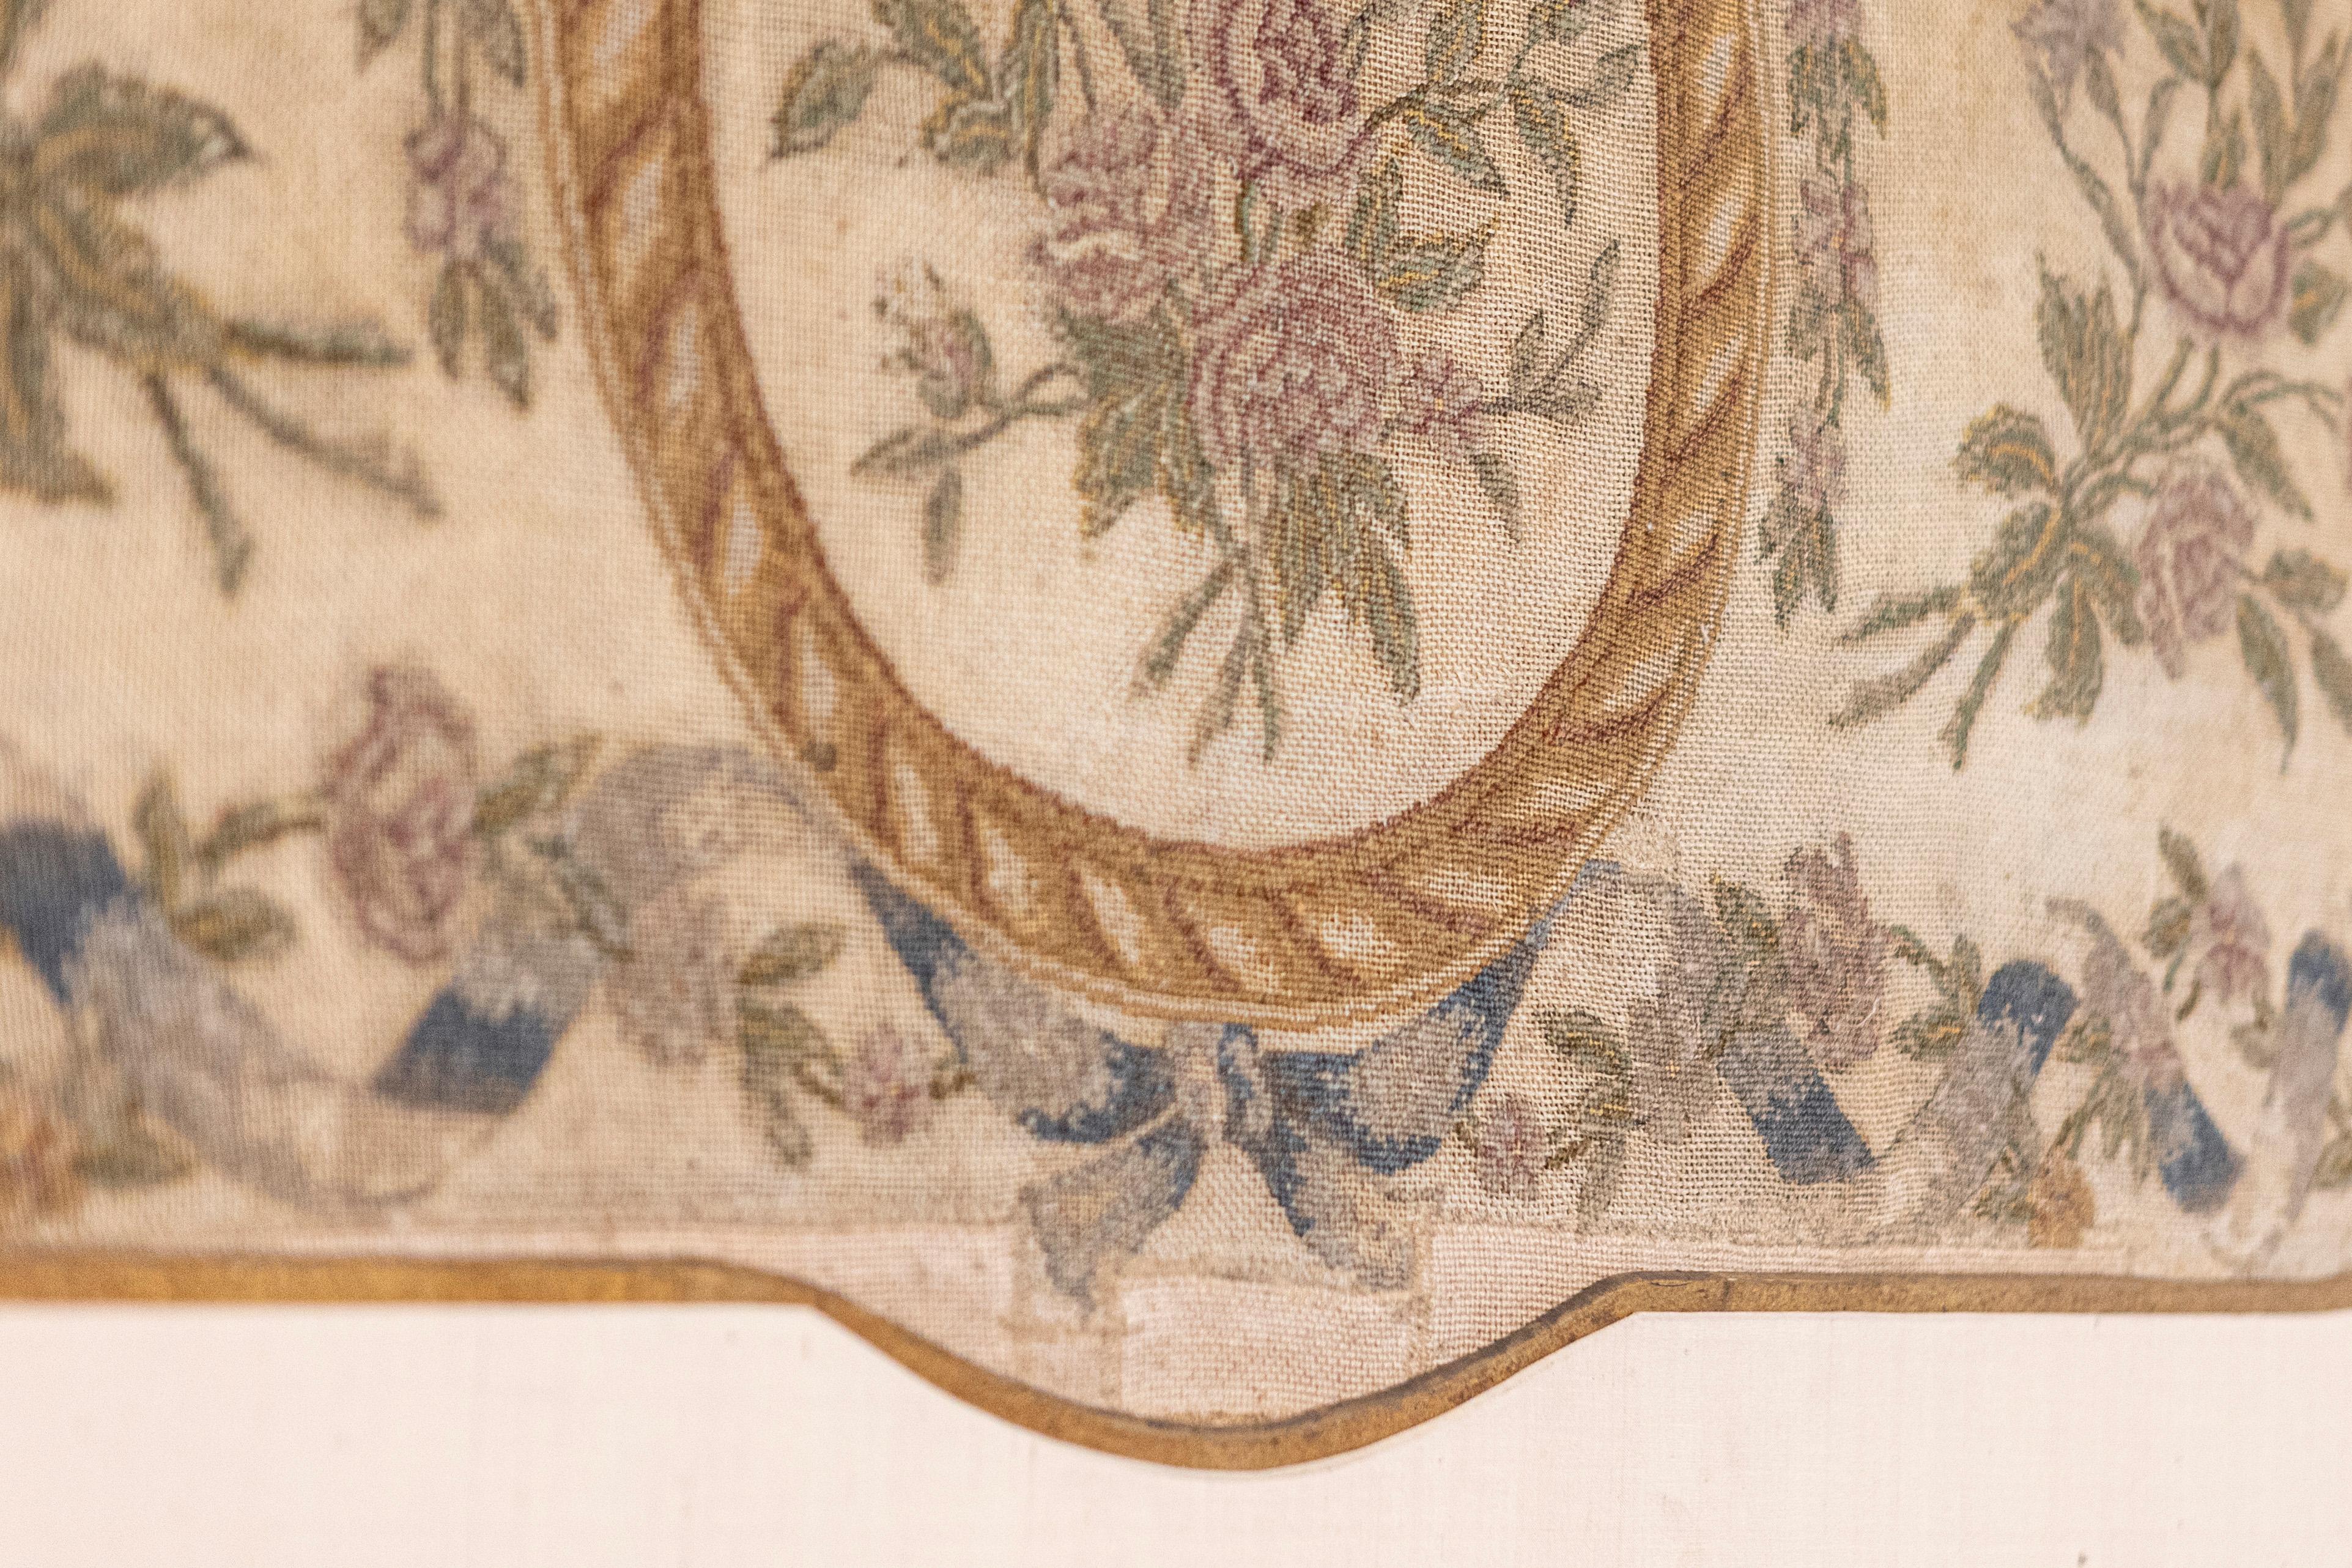 Ein französischer gerahmter Wandteppich aus dem 19. Jahrhundert mit Band- und Blumenmotiven. In einem schlichten, aber eleganten vergoldeten Rahmen mit Passepartout und vergoldetem Rand präsentiert sich diese hübsche horizontale Nadelspitze in einer